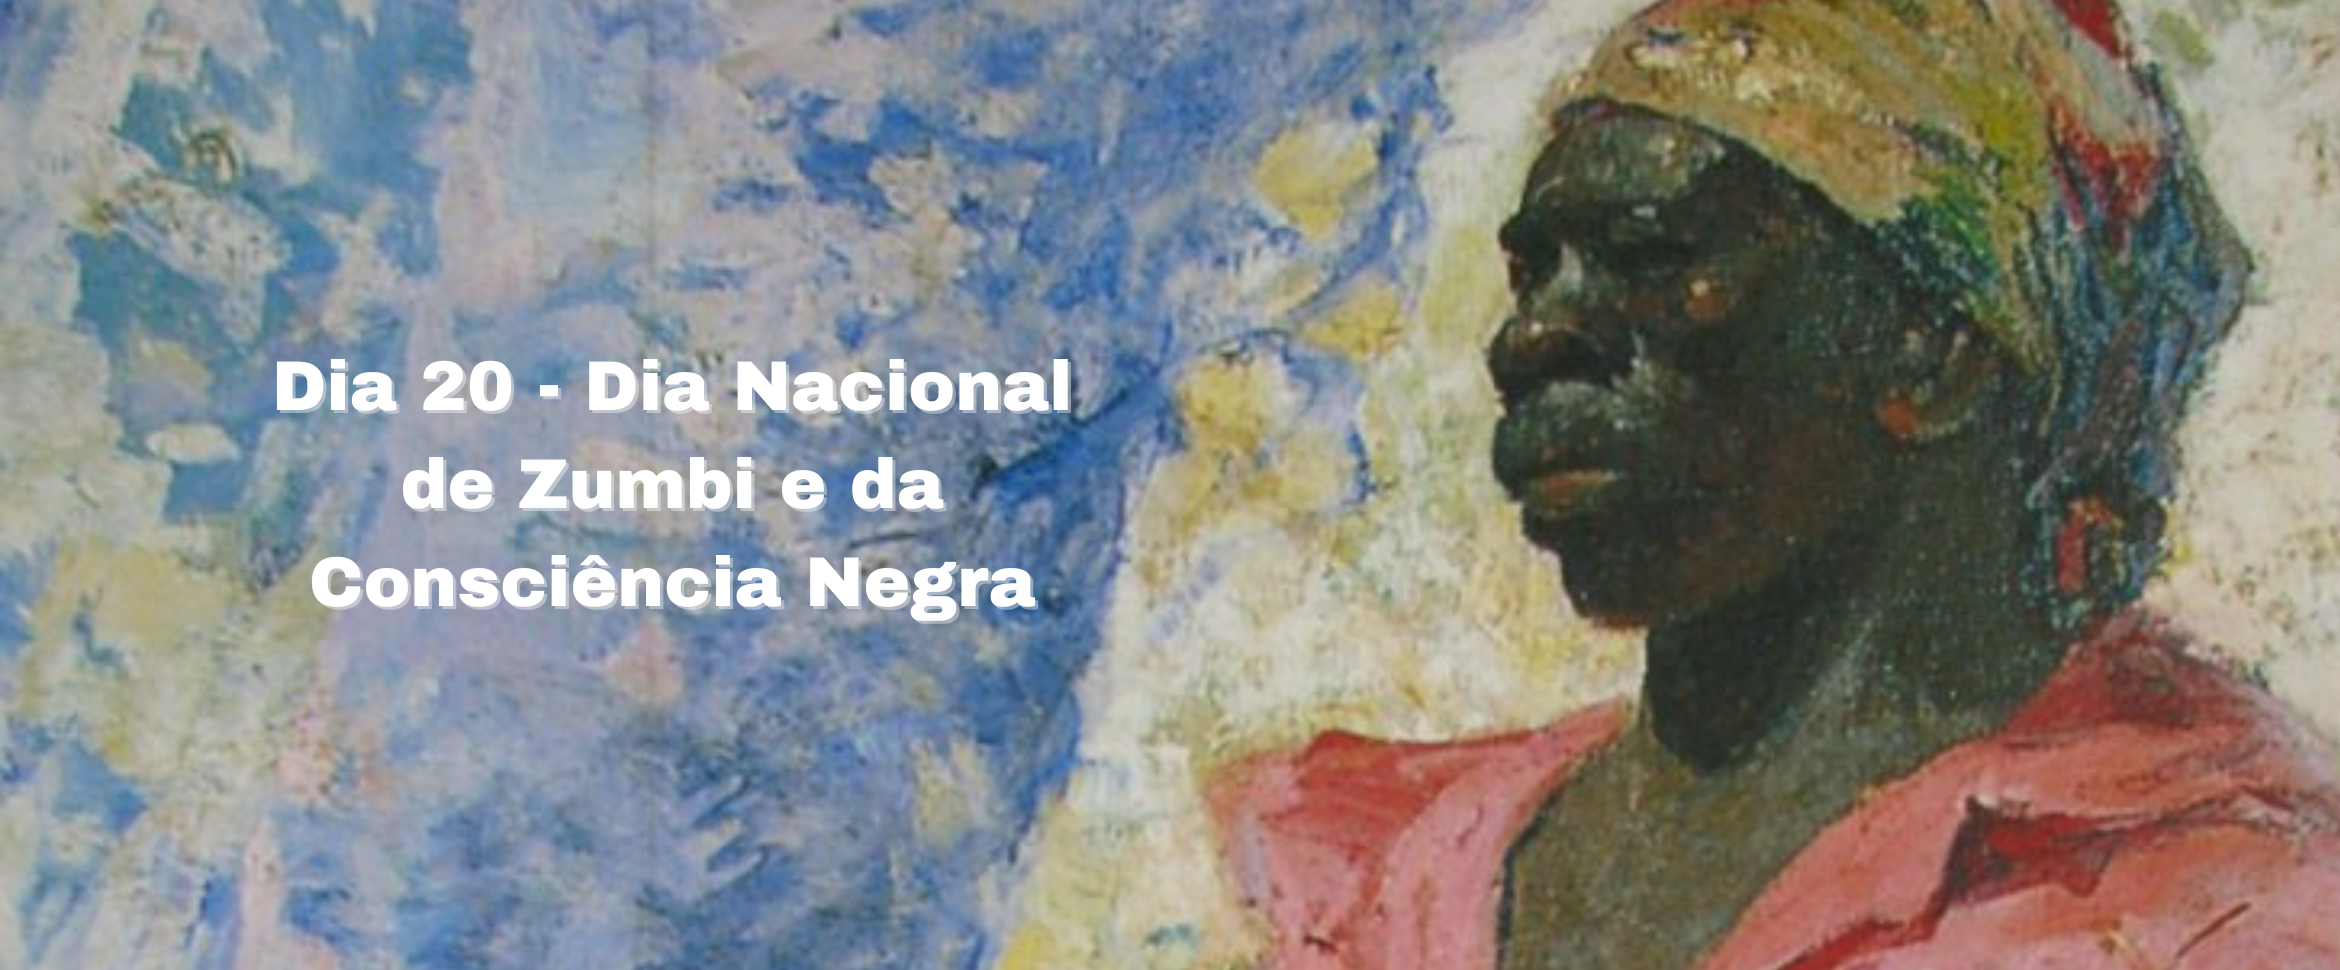 Dia 20 - Dia Nacional da Consciência Negra